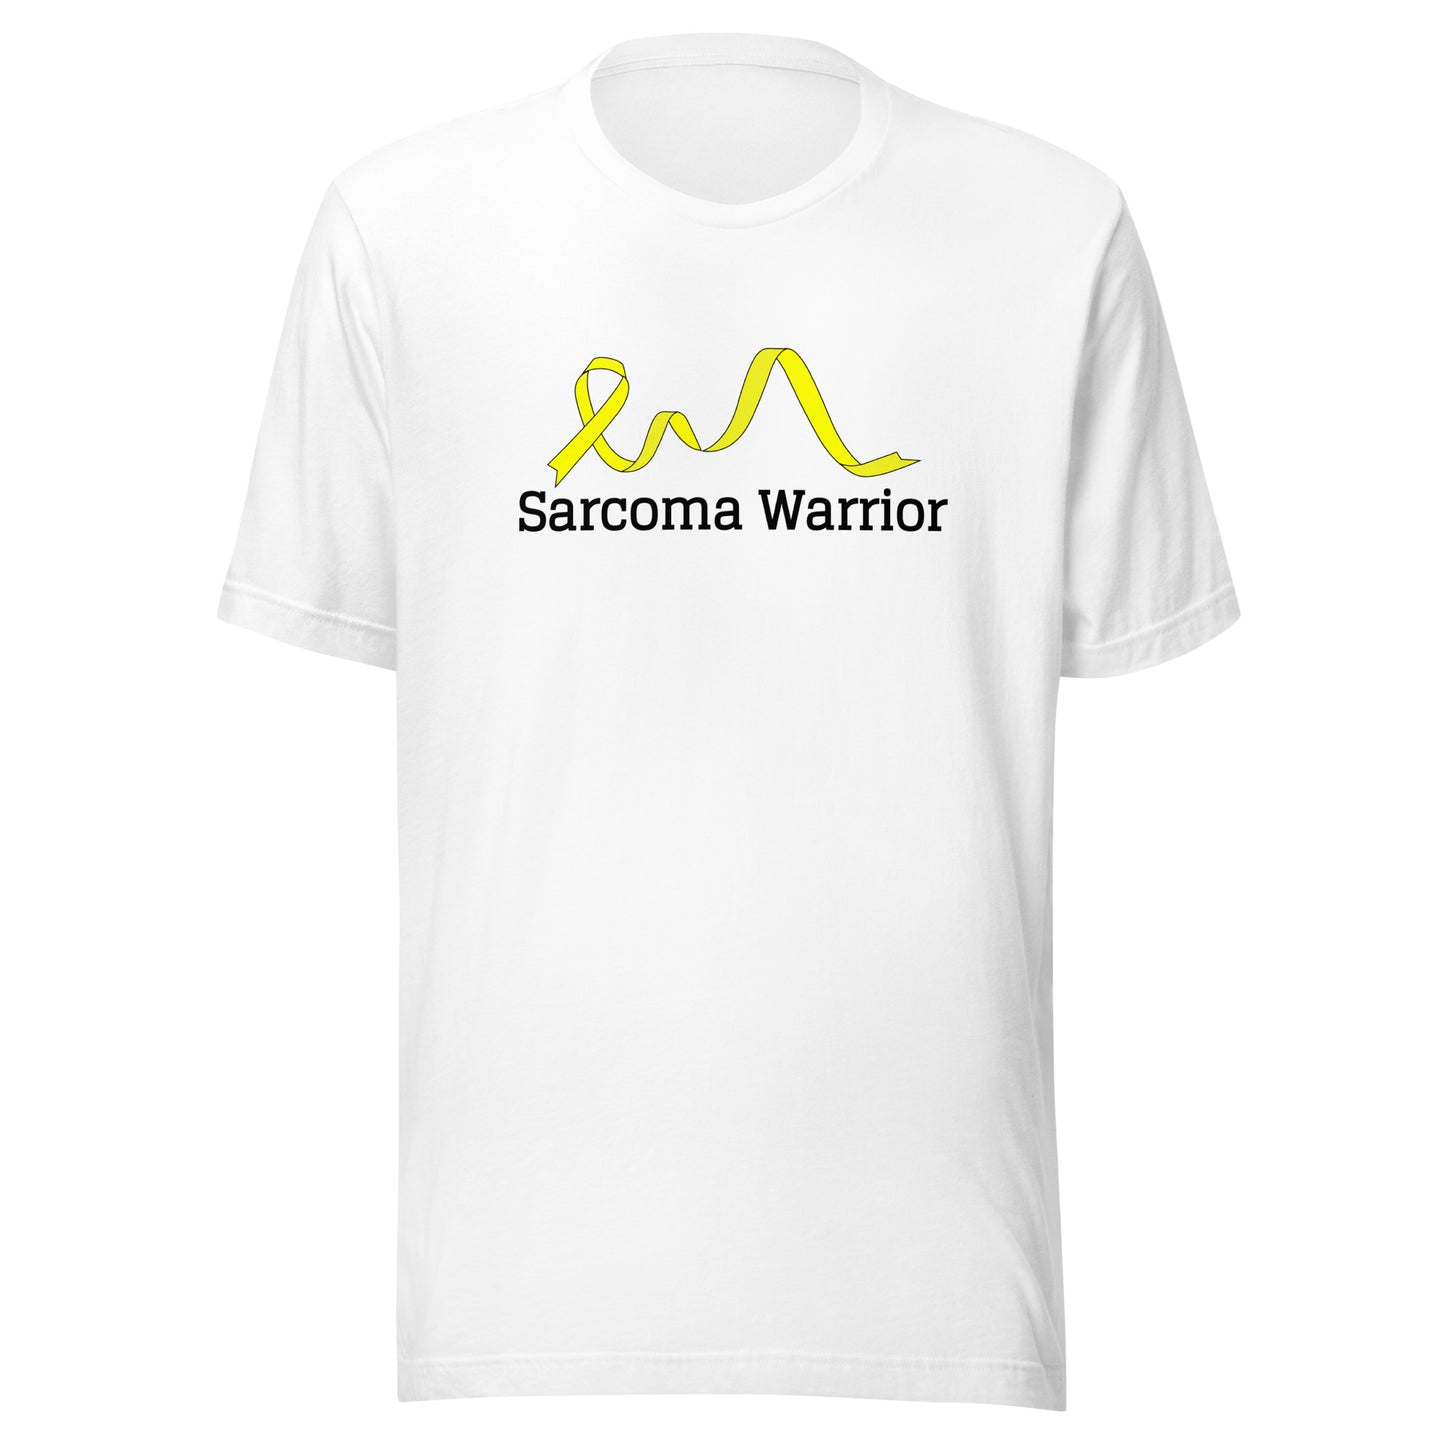 Sarcoma Warrior